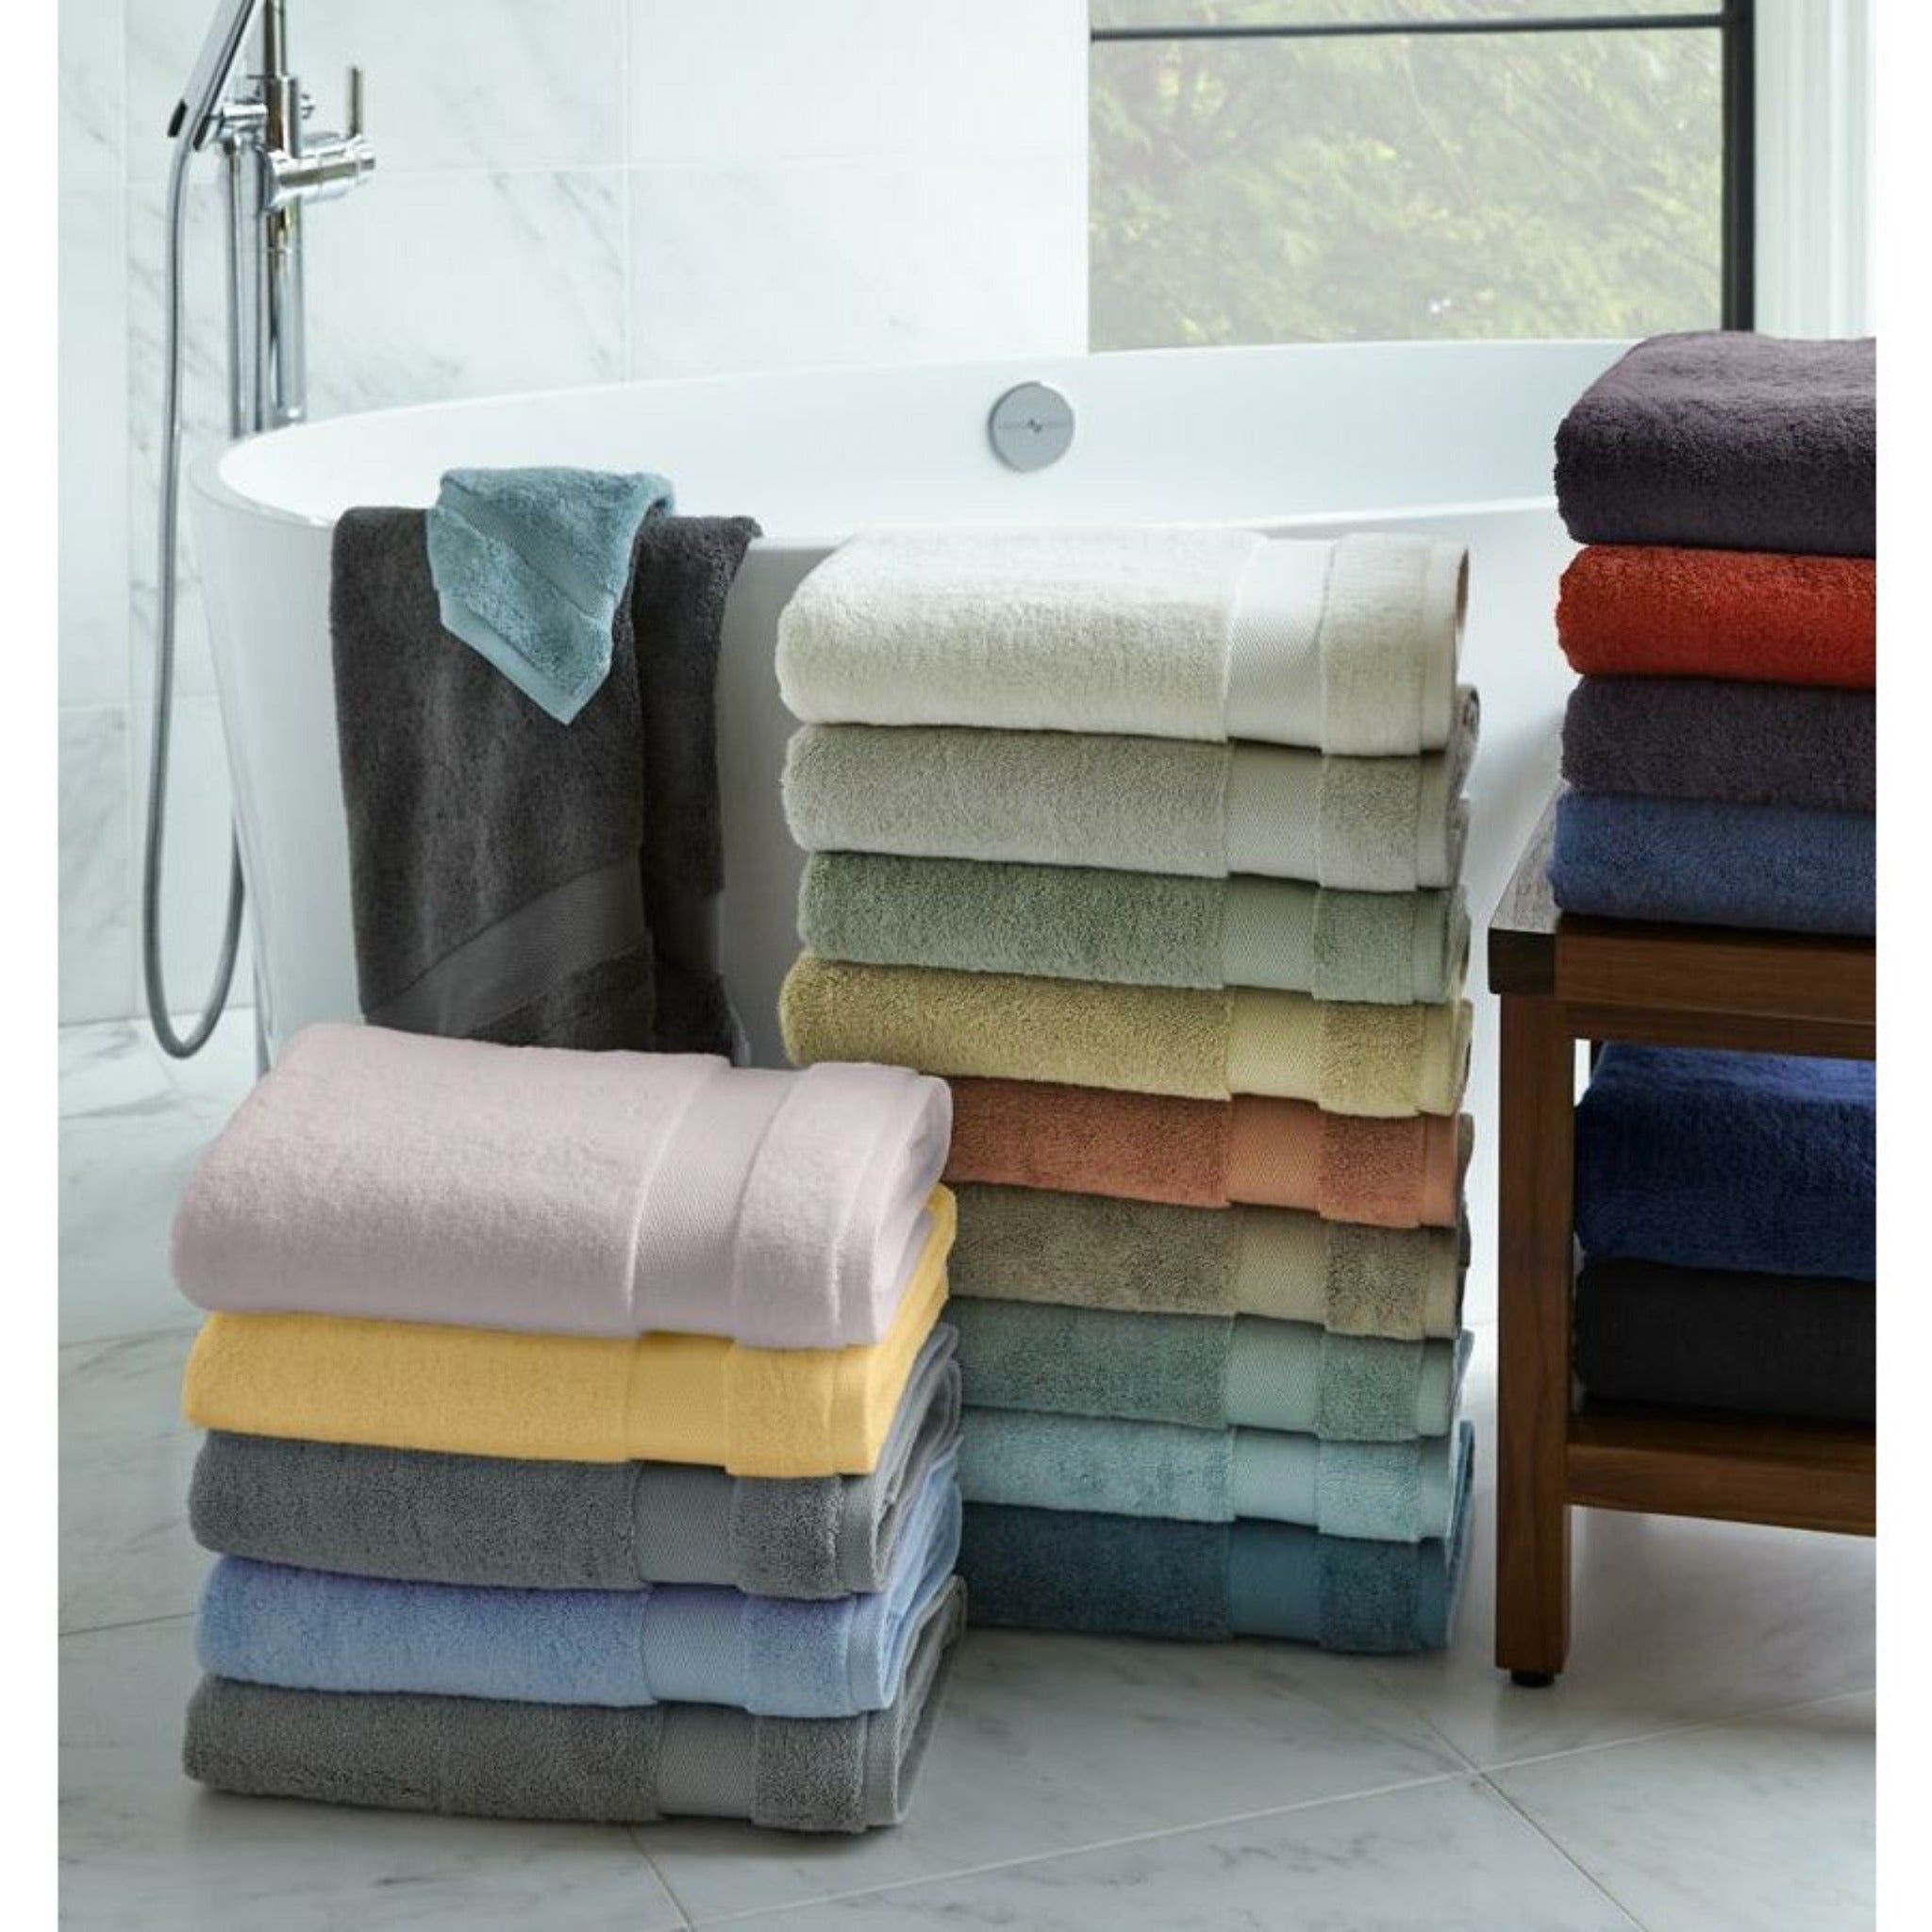 https://flandb.com/cdn/shop/products/Sferra-Bello-Bath-Towel-Stacked-Colors-Lifestyle_c610d0fe-d2c5-47c2-9033-4bb7cf71b964_5000x.jpg?v=1668174770